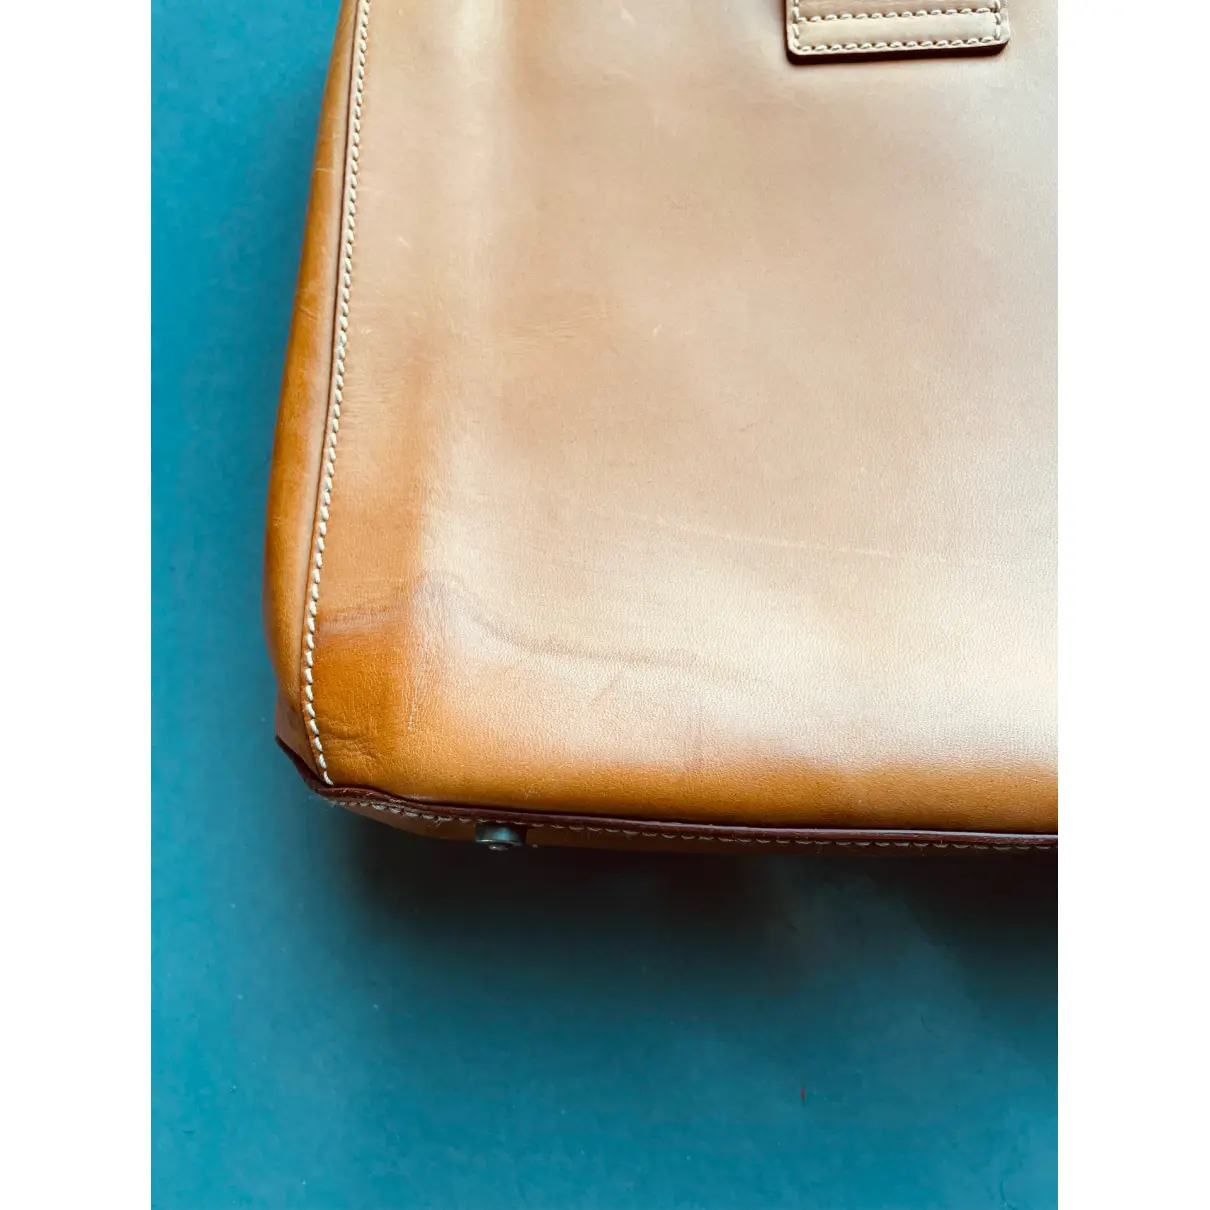 Buy Celine Leather handbag online - Vintage